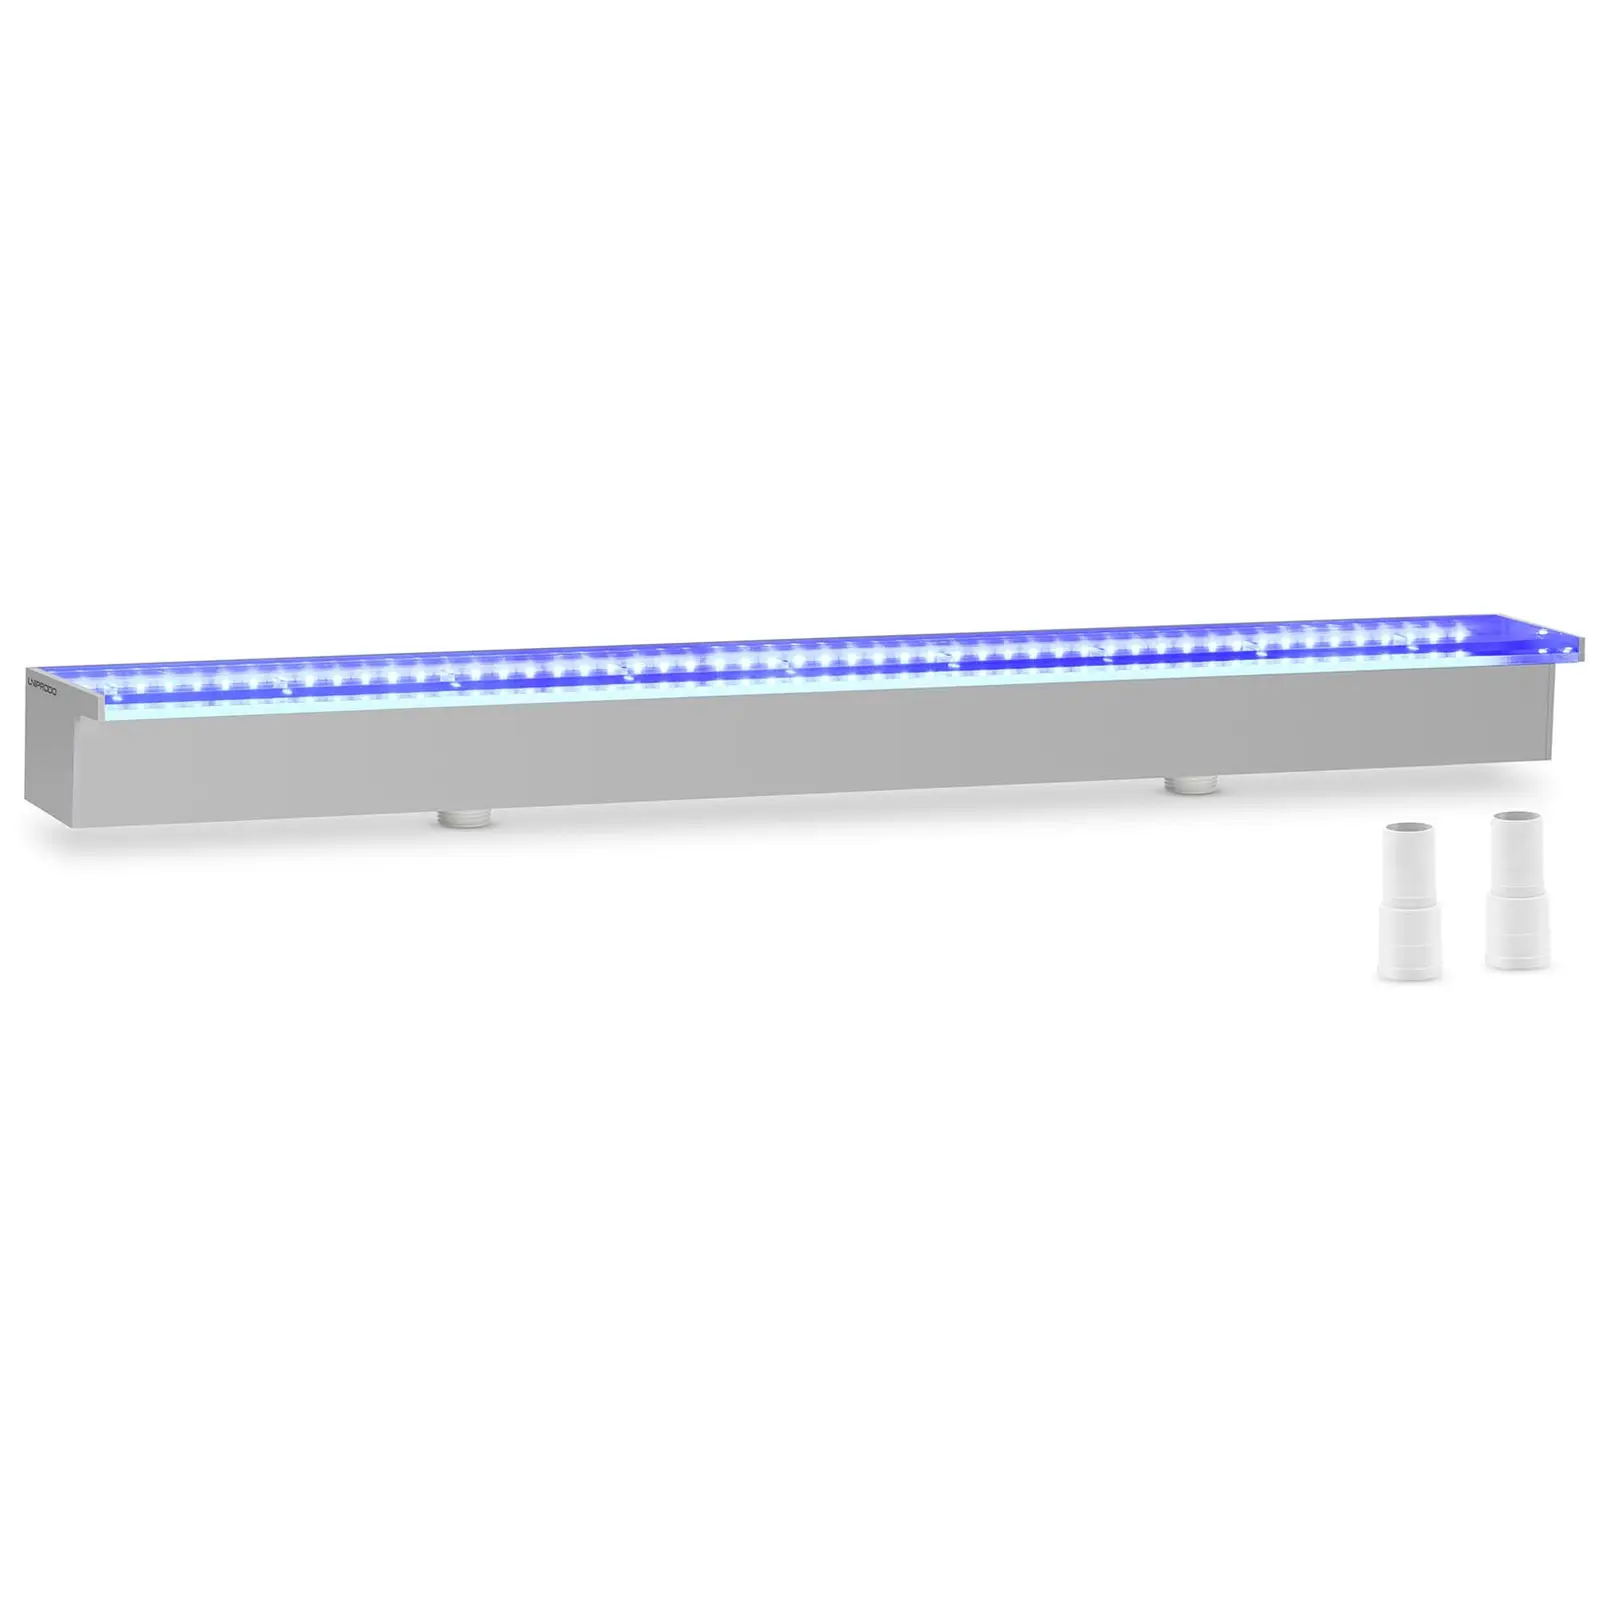 Schwalldusche - 90 cm - LED-Beleuchtung - Blau / Weiß - 30 mm Wasserauslauf